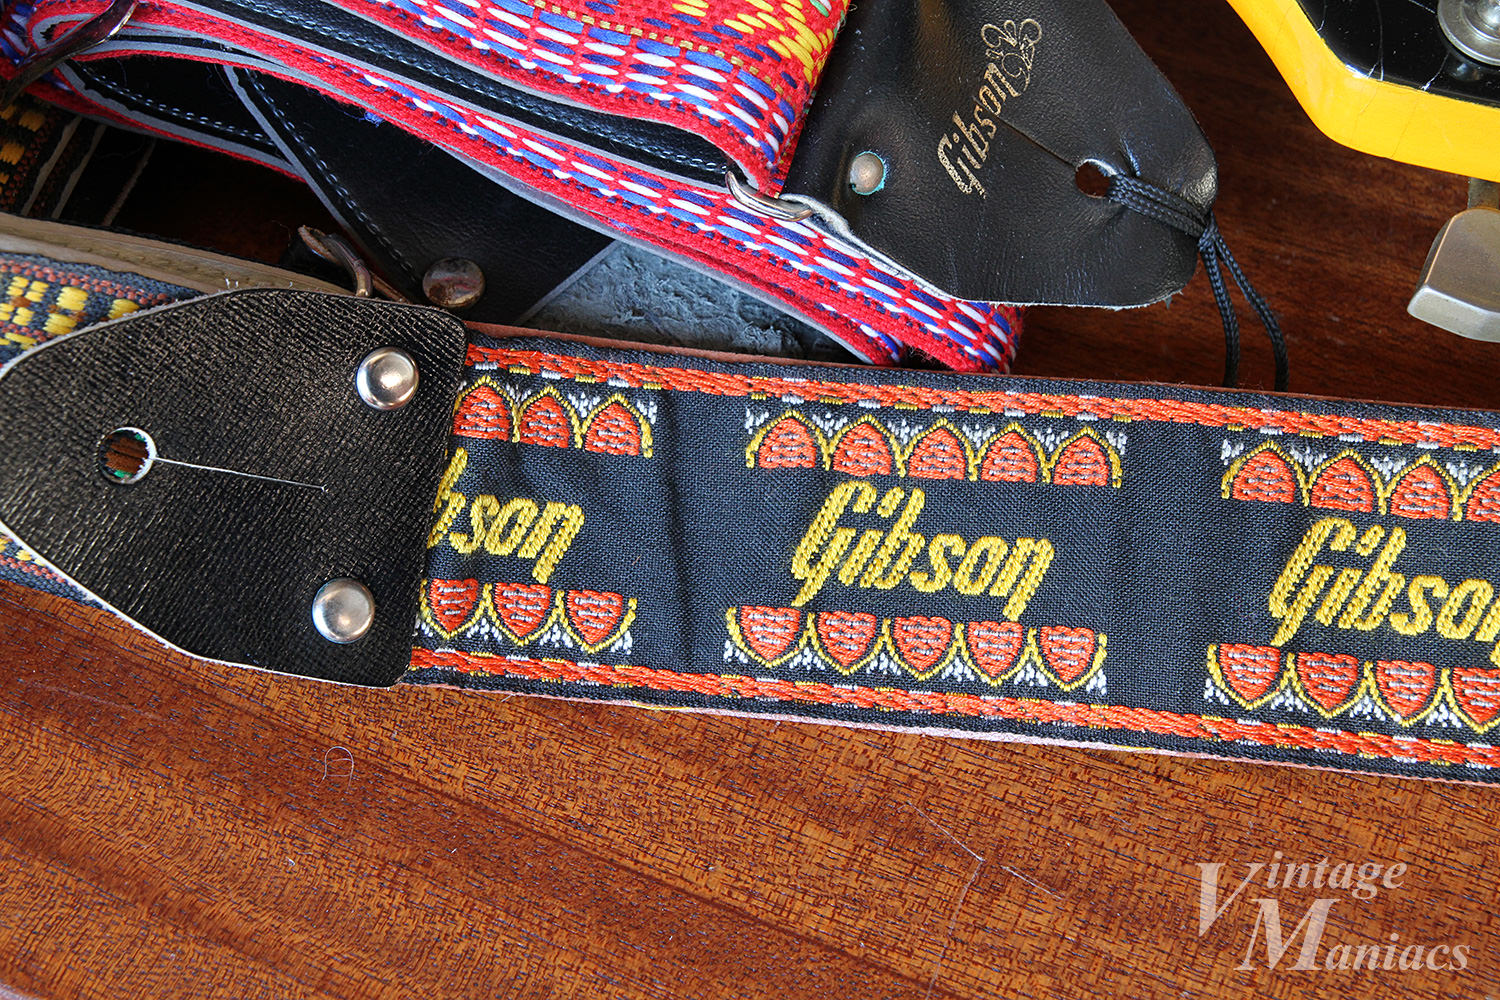 ヴィンテージ・ストラップと復刻 Gibson Original Collection | Vintage Maniacs